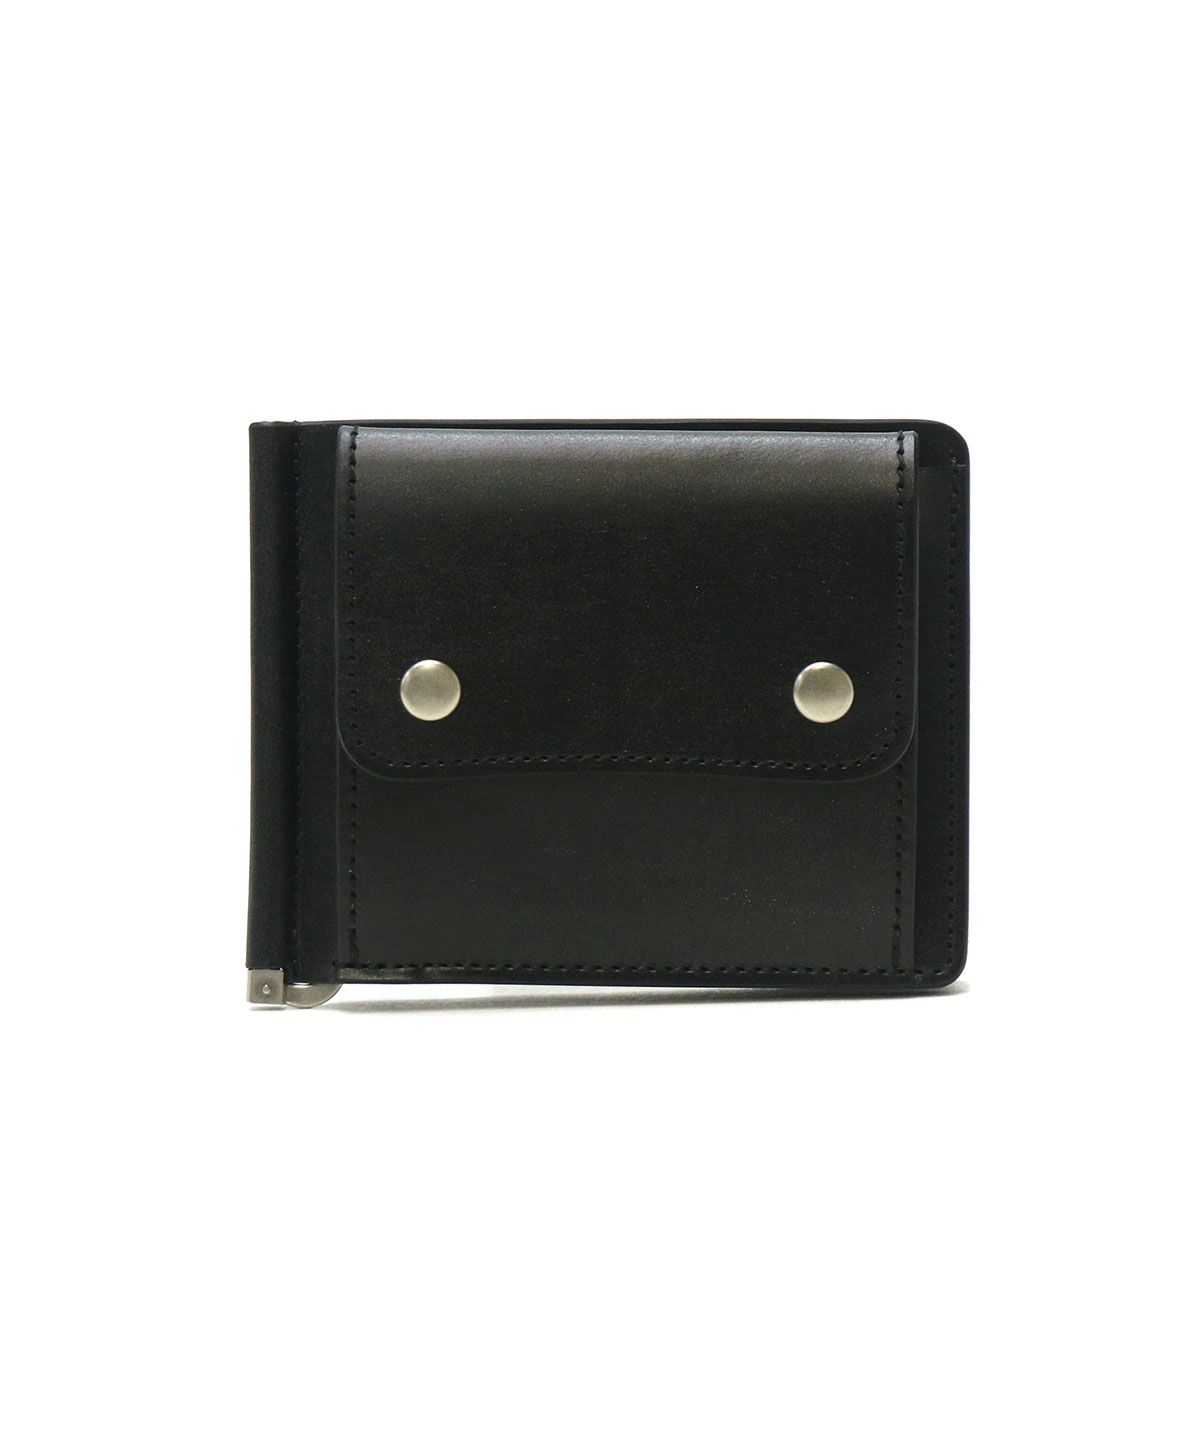 美品 スロウ マネークリップ コインケース カードケース レザー ブラック折り財布二つ財布